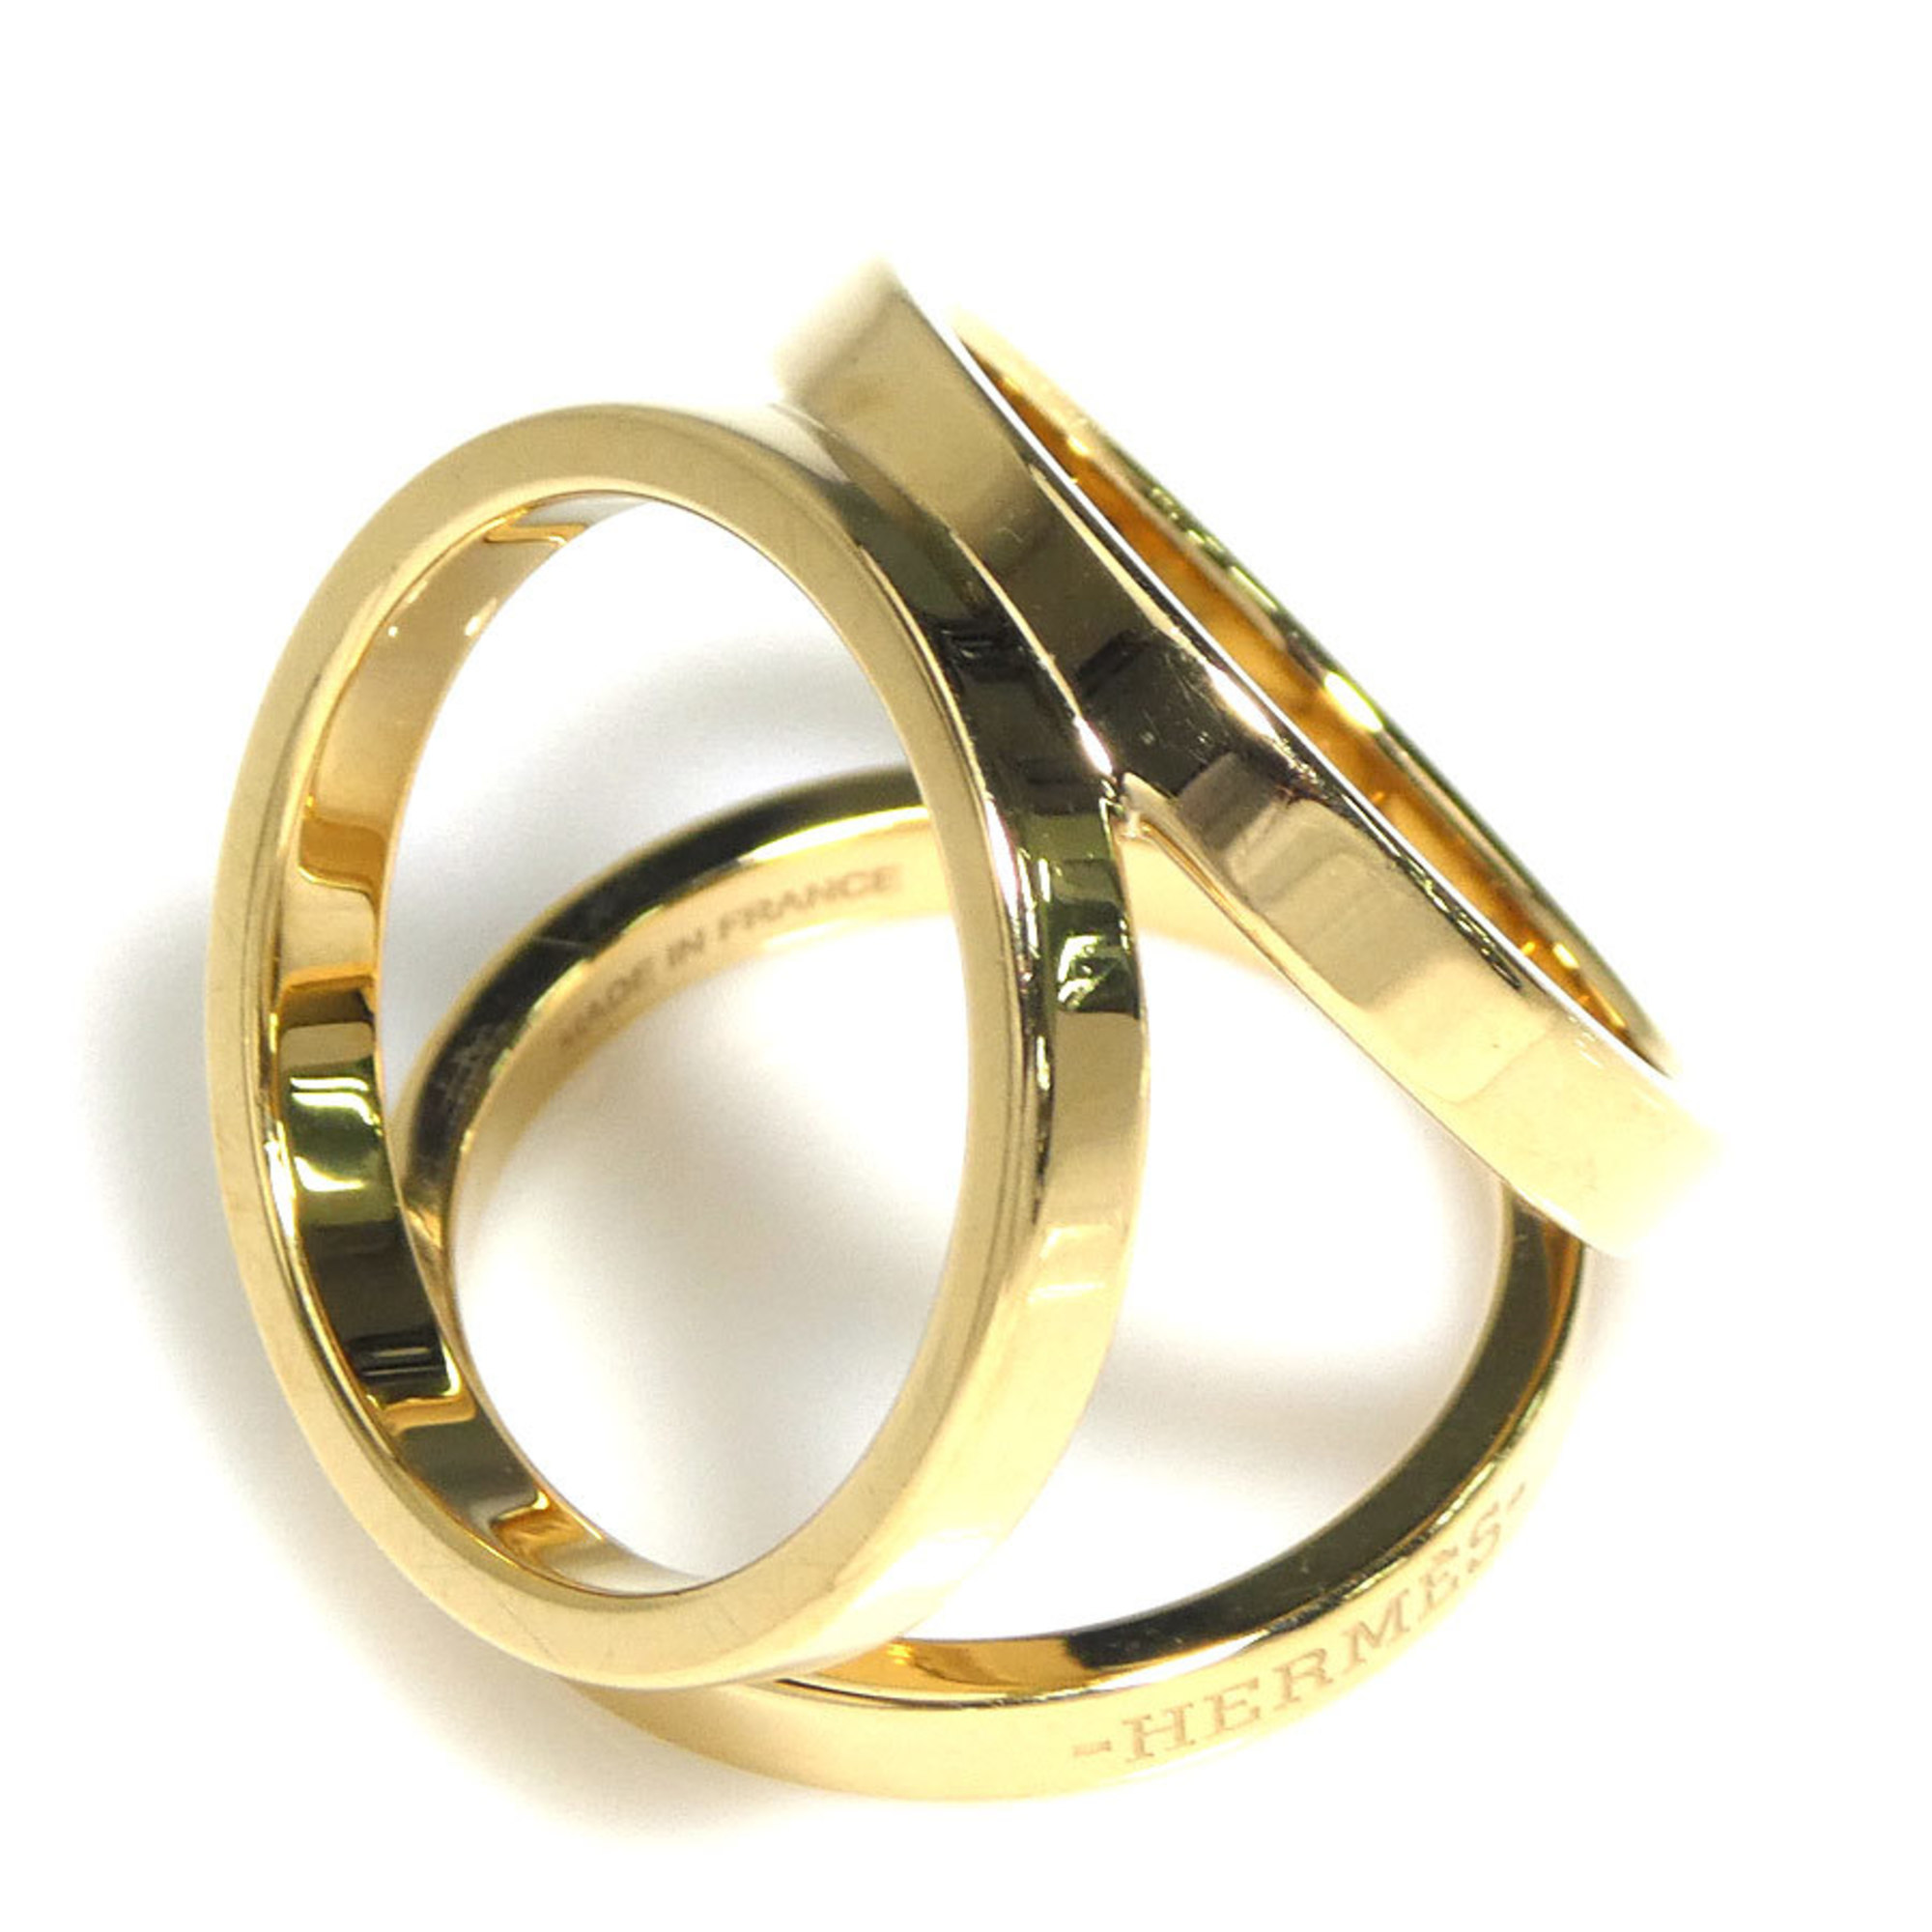 Hermes HERMES Scarf Muffler Ring Metal Gold Women's e58537a